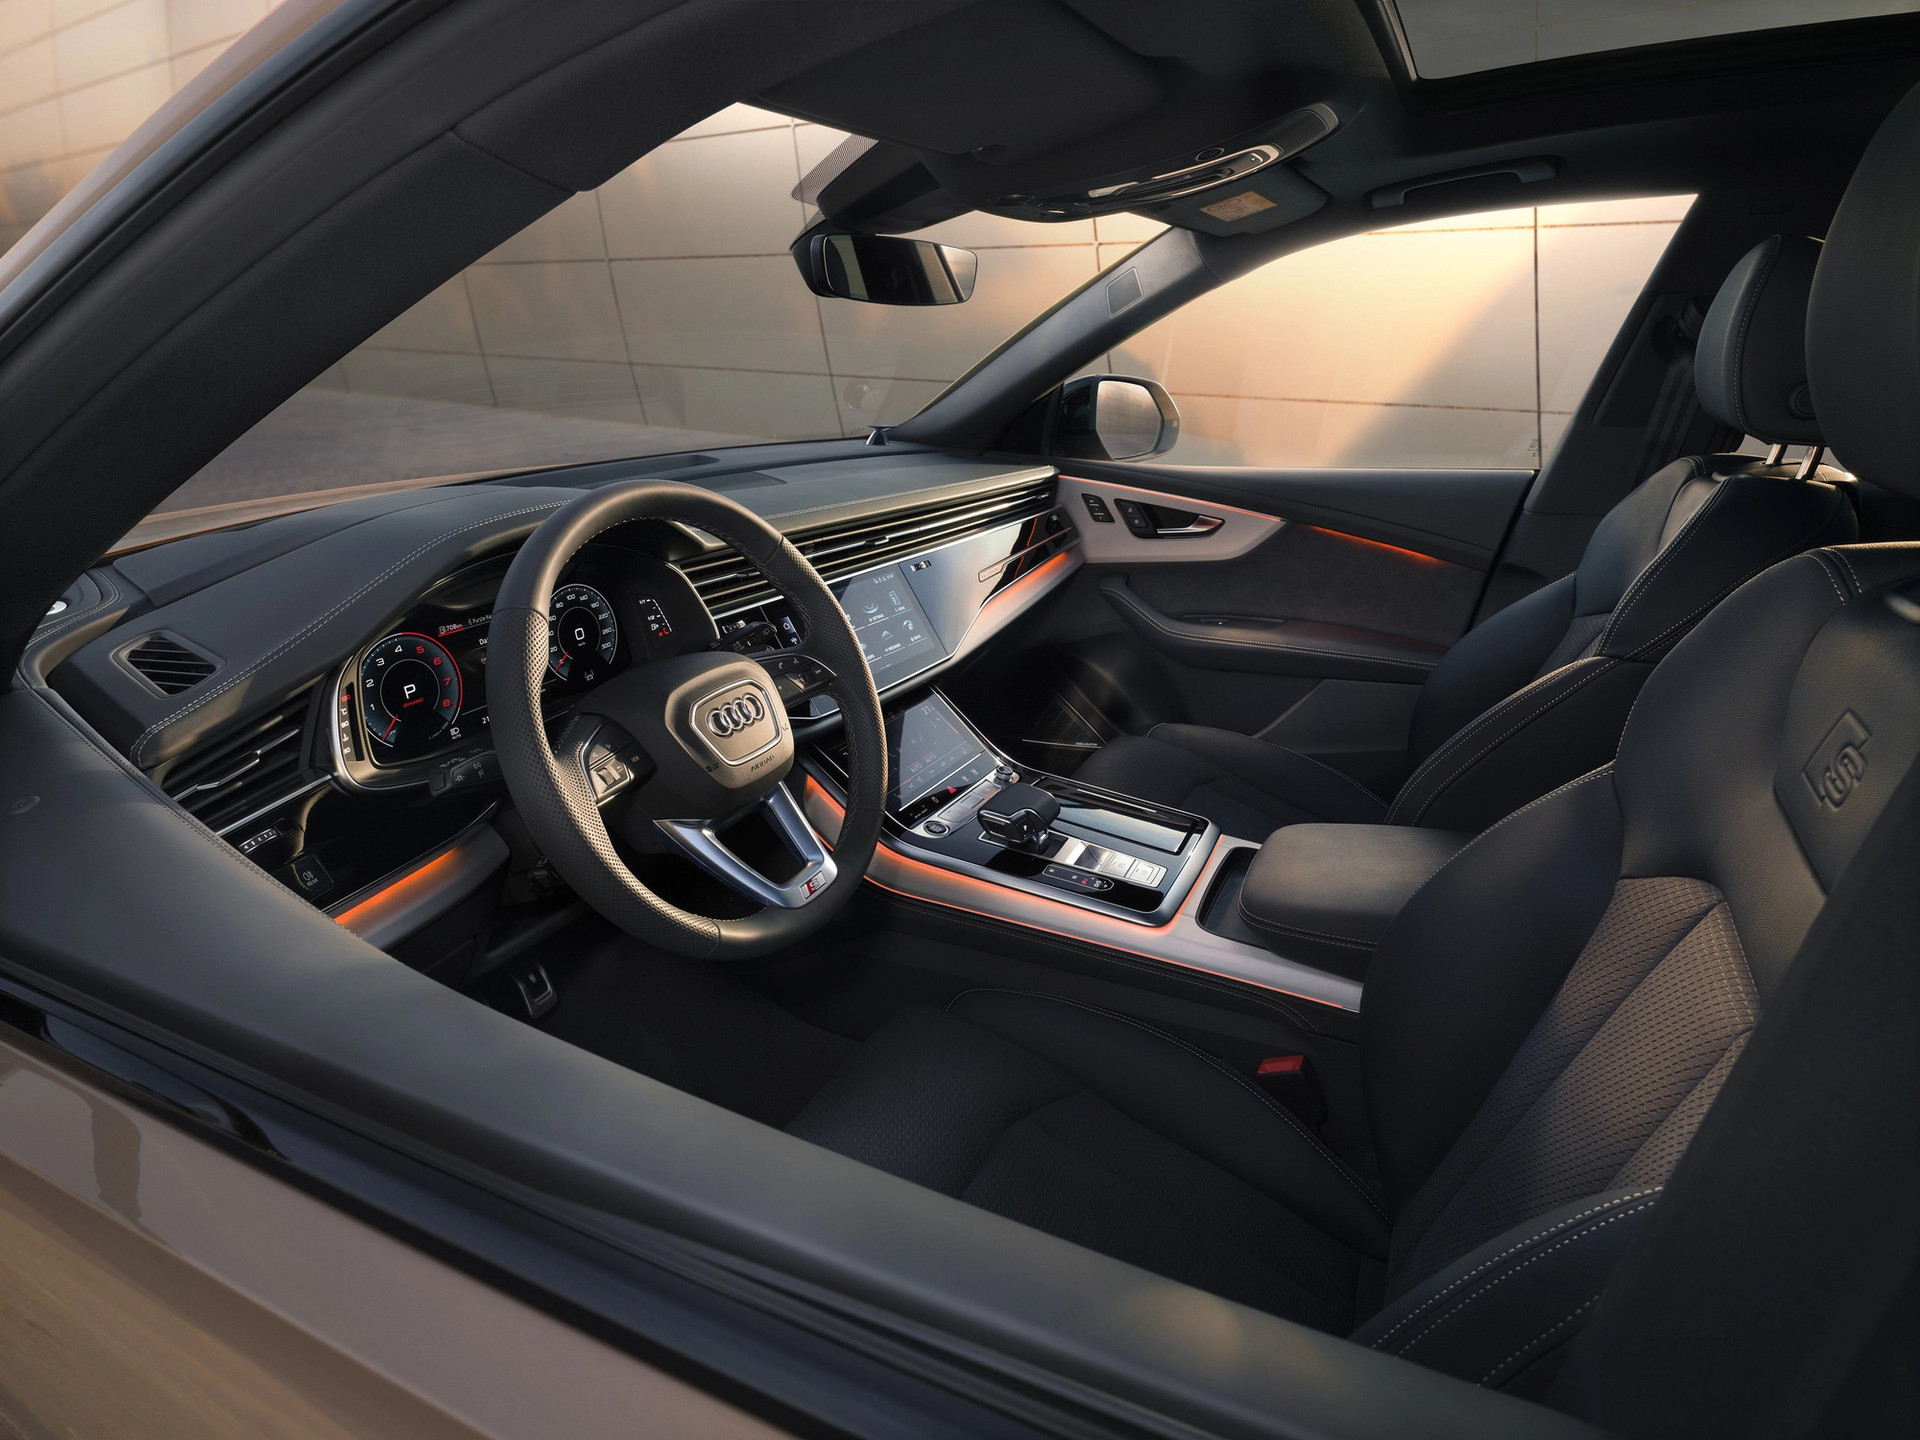 Xe được trang bị nhiều công nghệ hiện đại làm nổi bật vẻ đẹp của chiếc SUV sang trọng - Ảnh: Audi